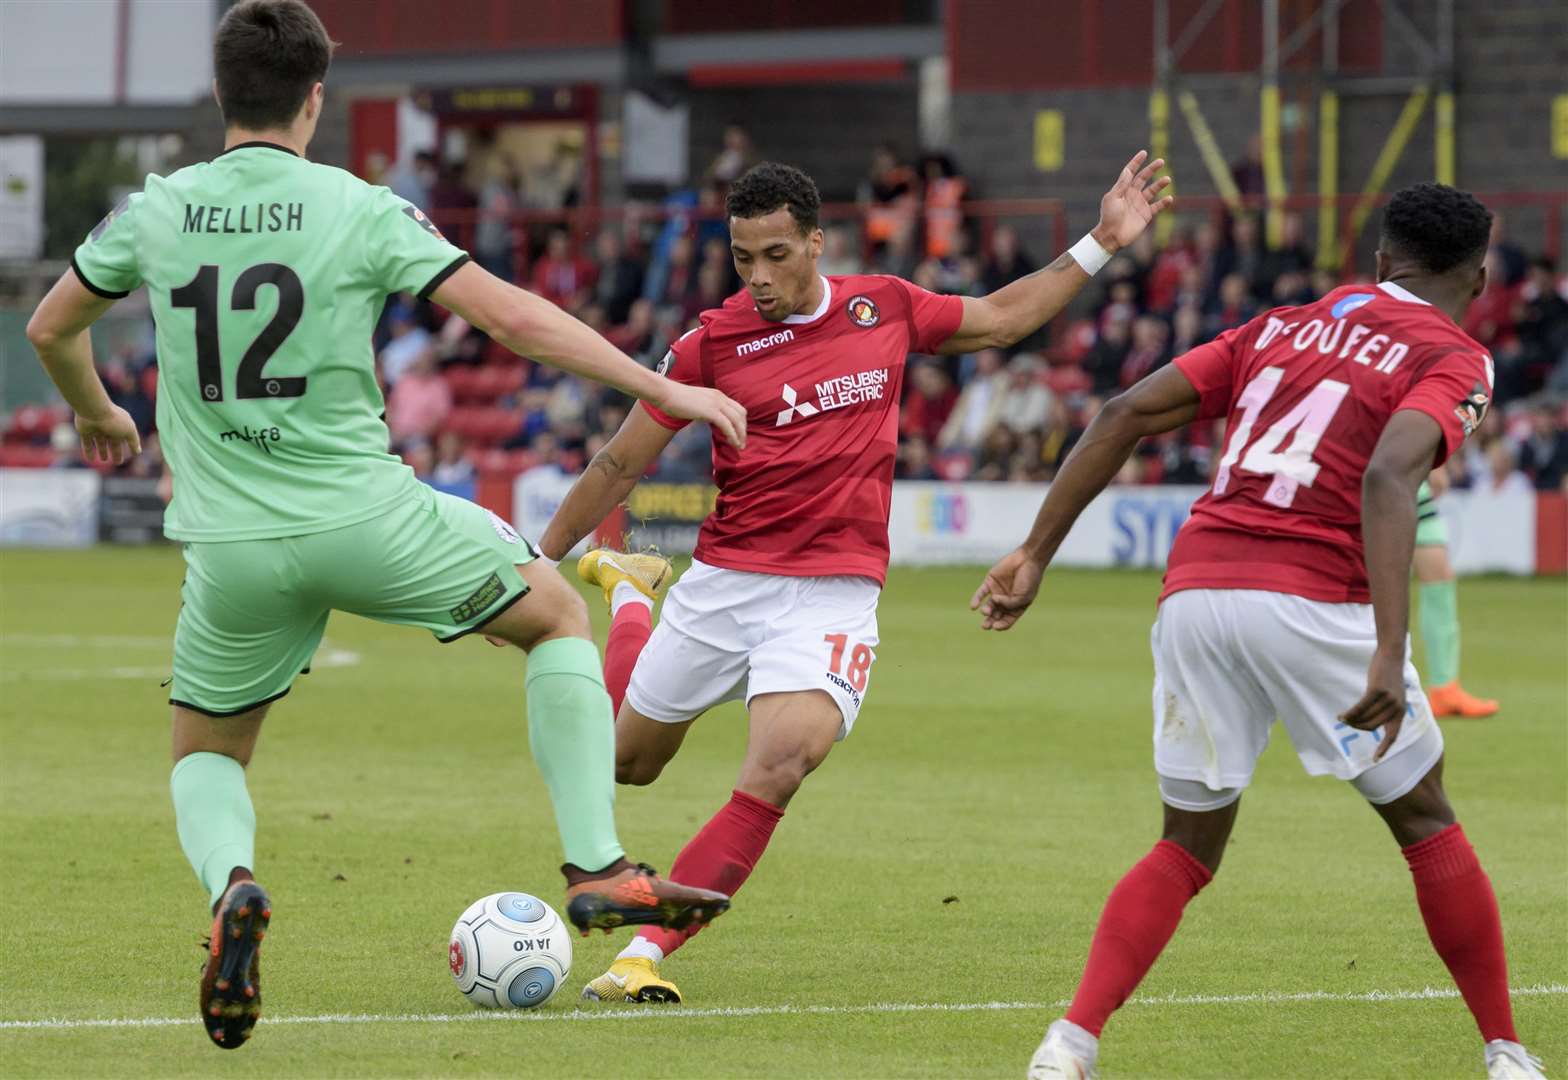 Corey Whitely takes aim at the Gateshead goal Picture: Andy Payton